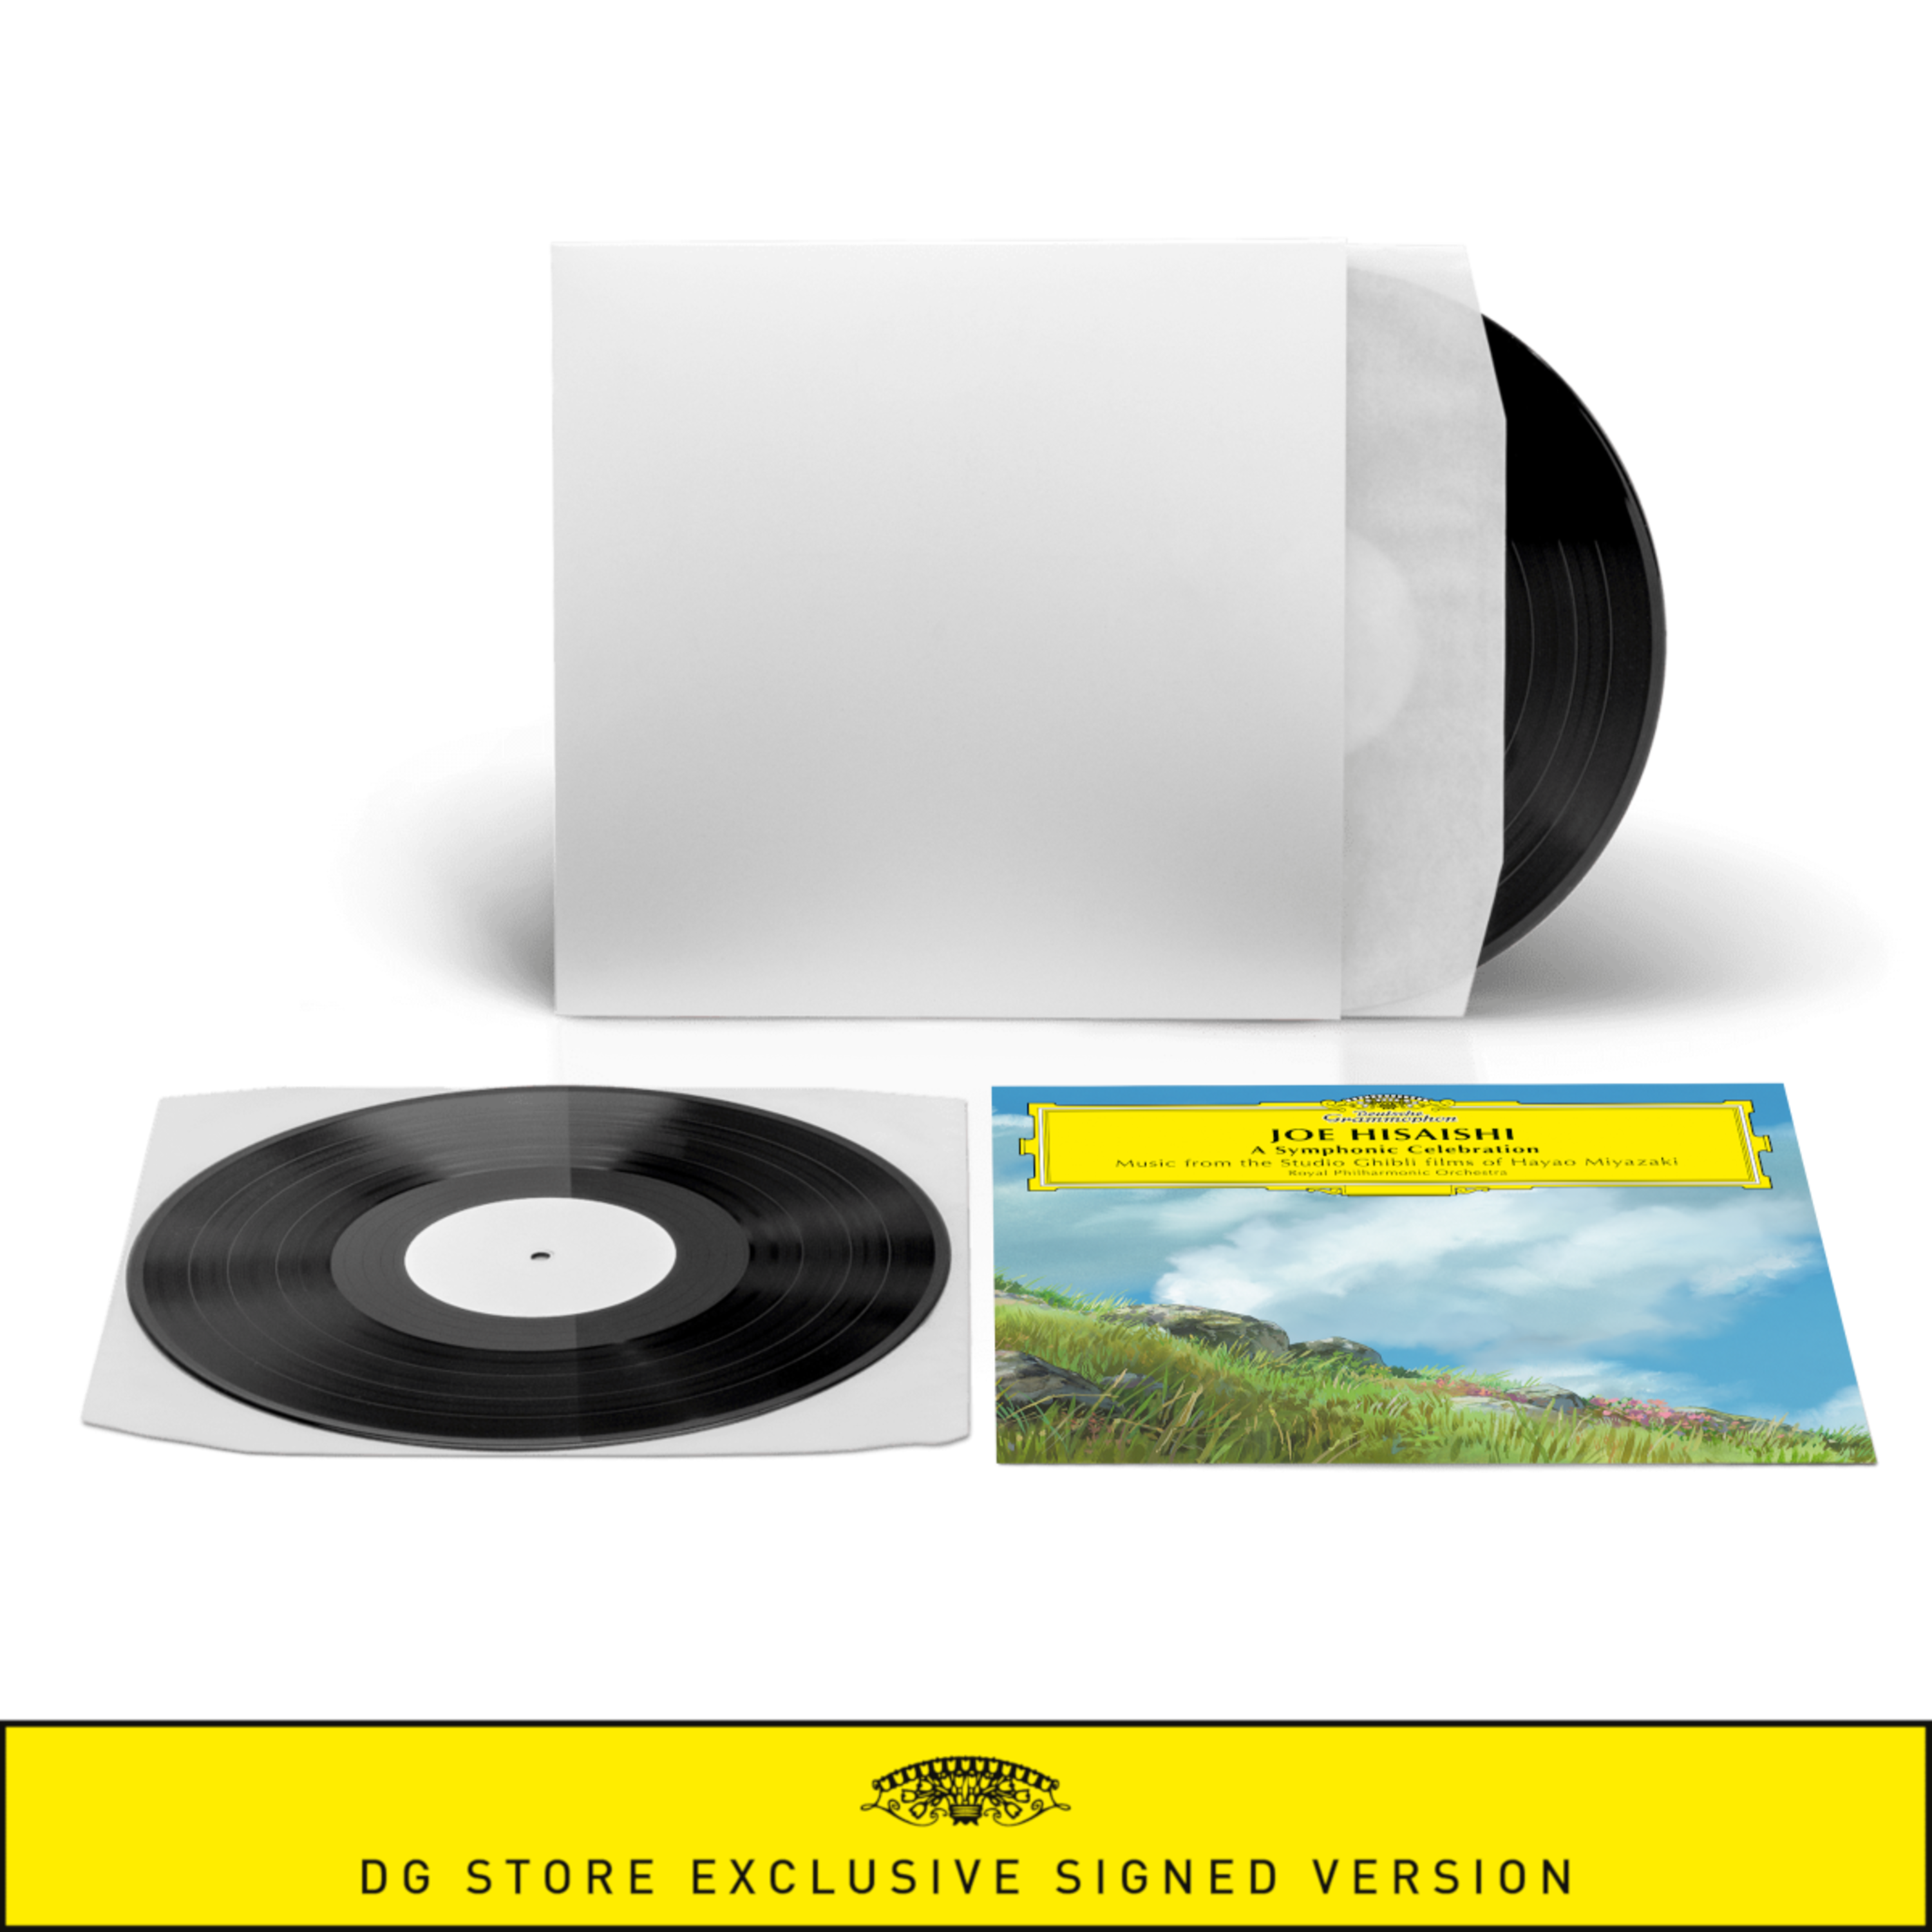 A Symphonic Celebration von Joe Hisaishi - Limitierte Signierte Nummerierte 2 Vinyl White Label + Art Card jetzt im Deutsche Grammophon Store